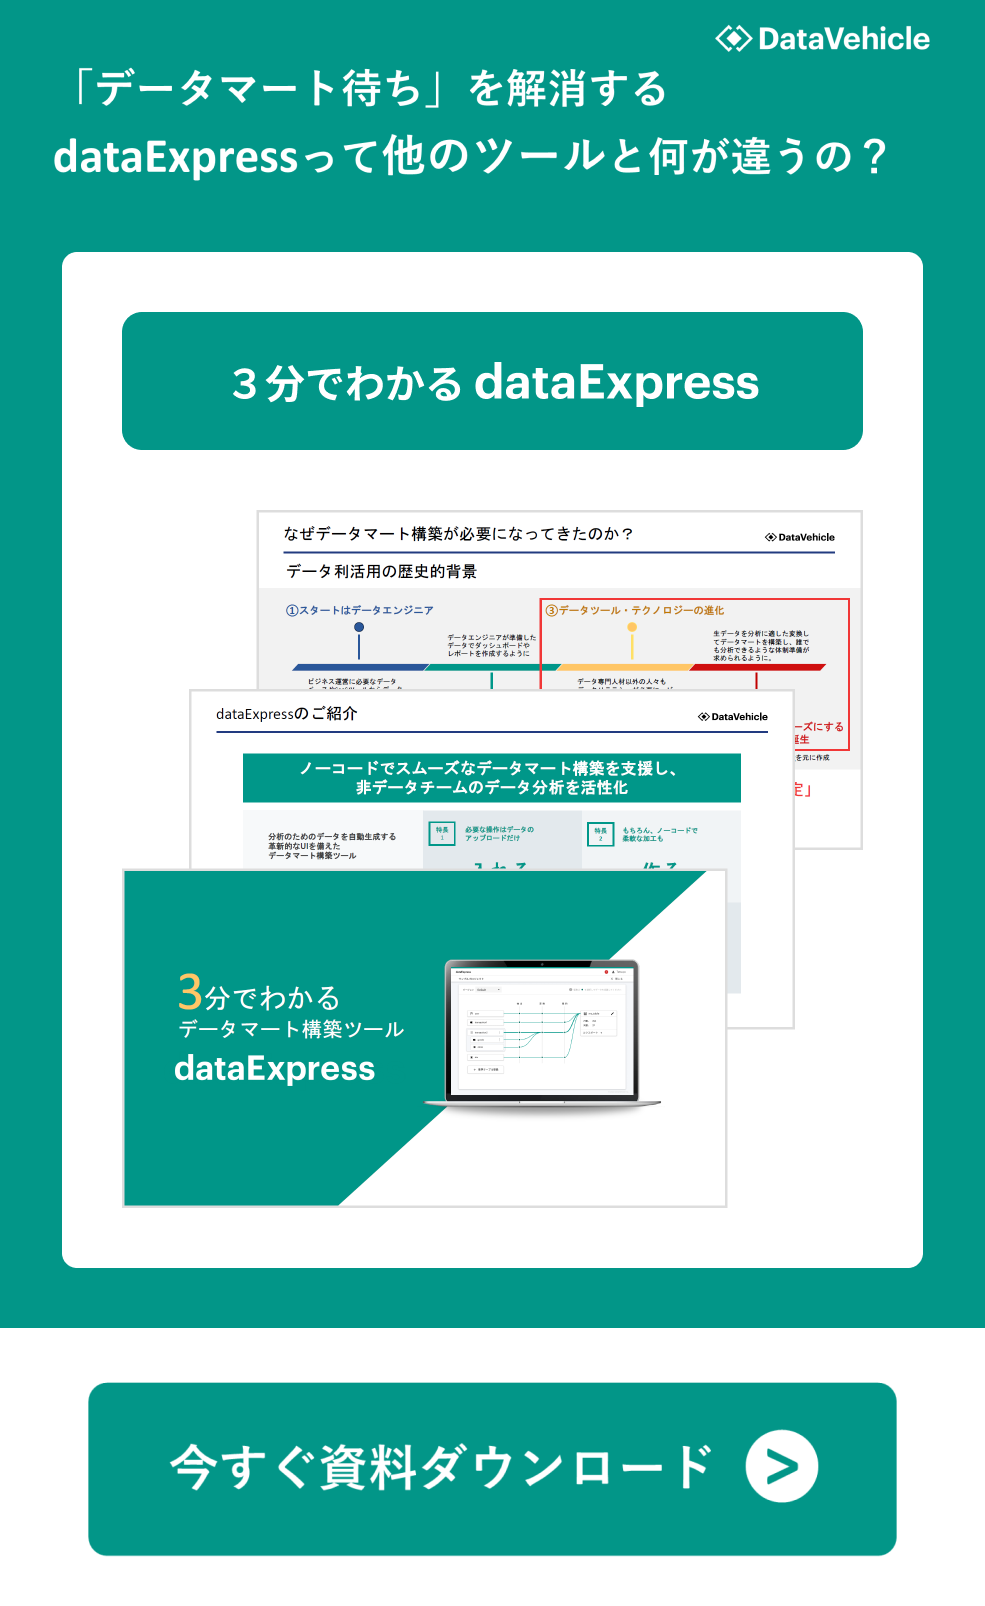 「３分でわかるデータマート構築ツール dataExpress」の資料をダウンロード